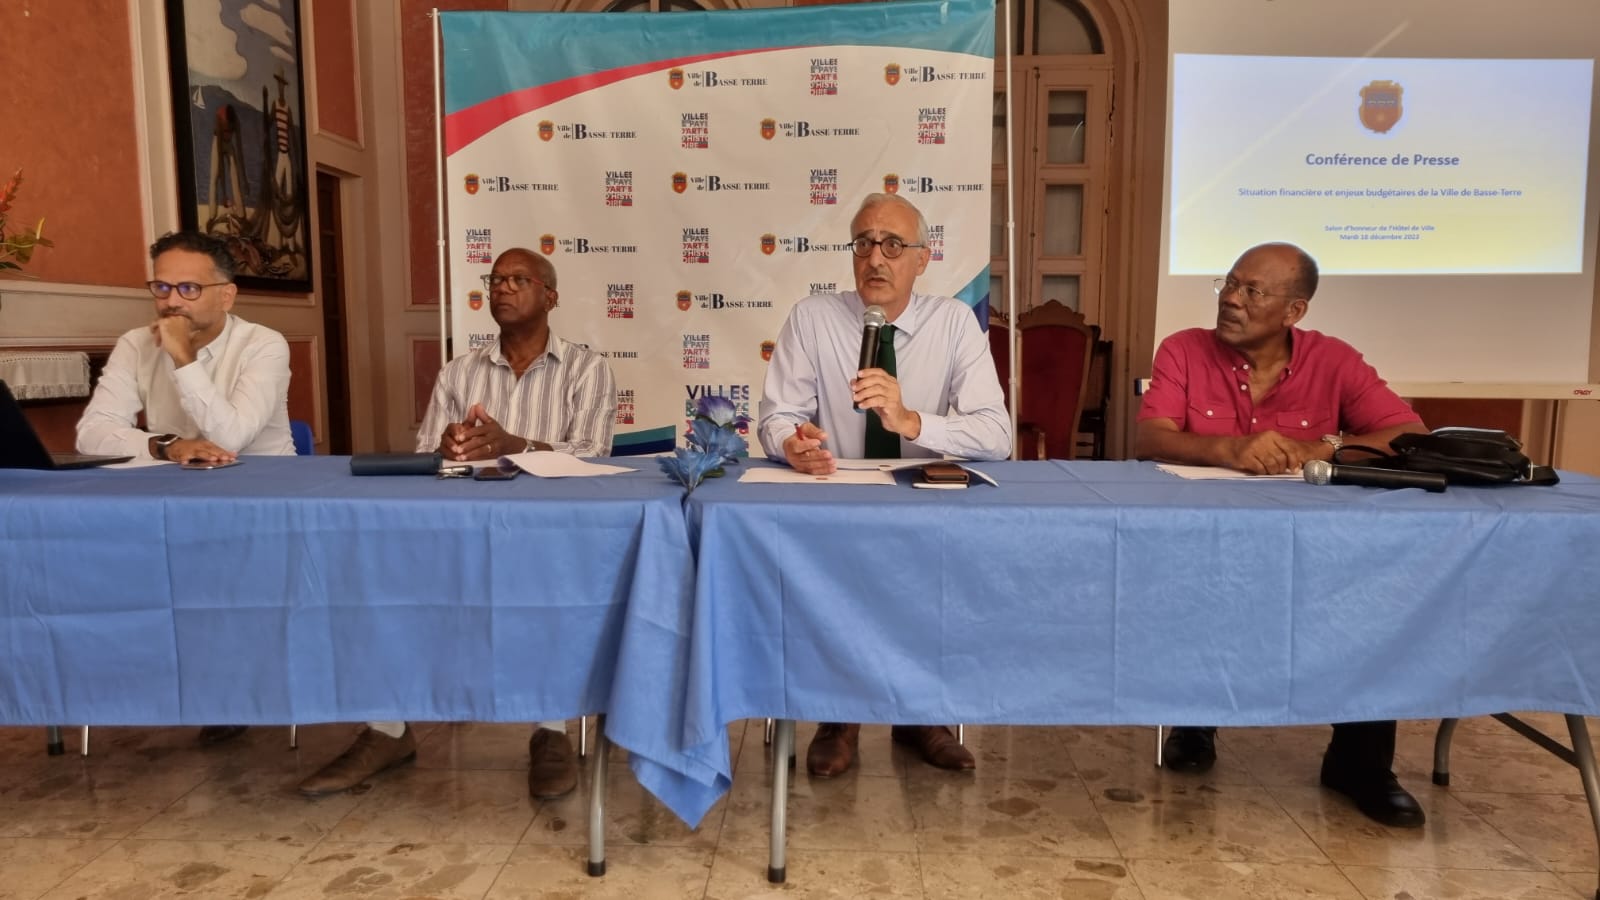     Les finances de la ville de Basse-Terre se redressent

